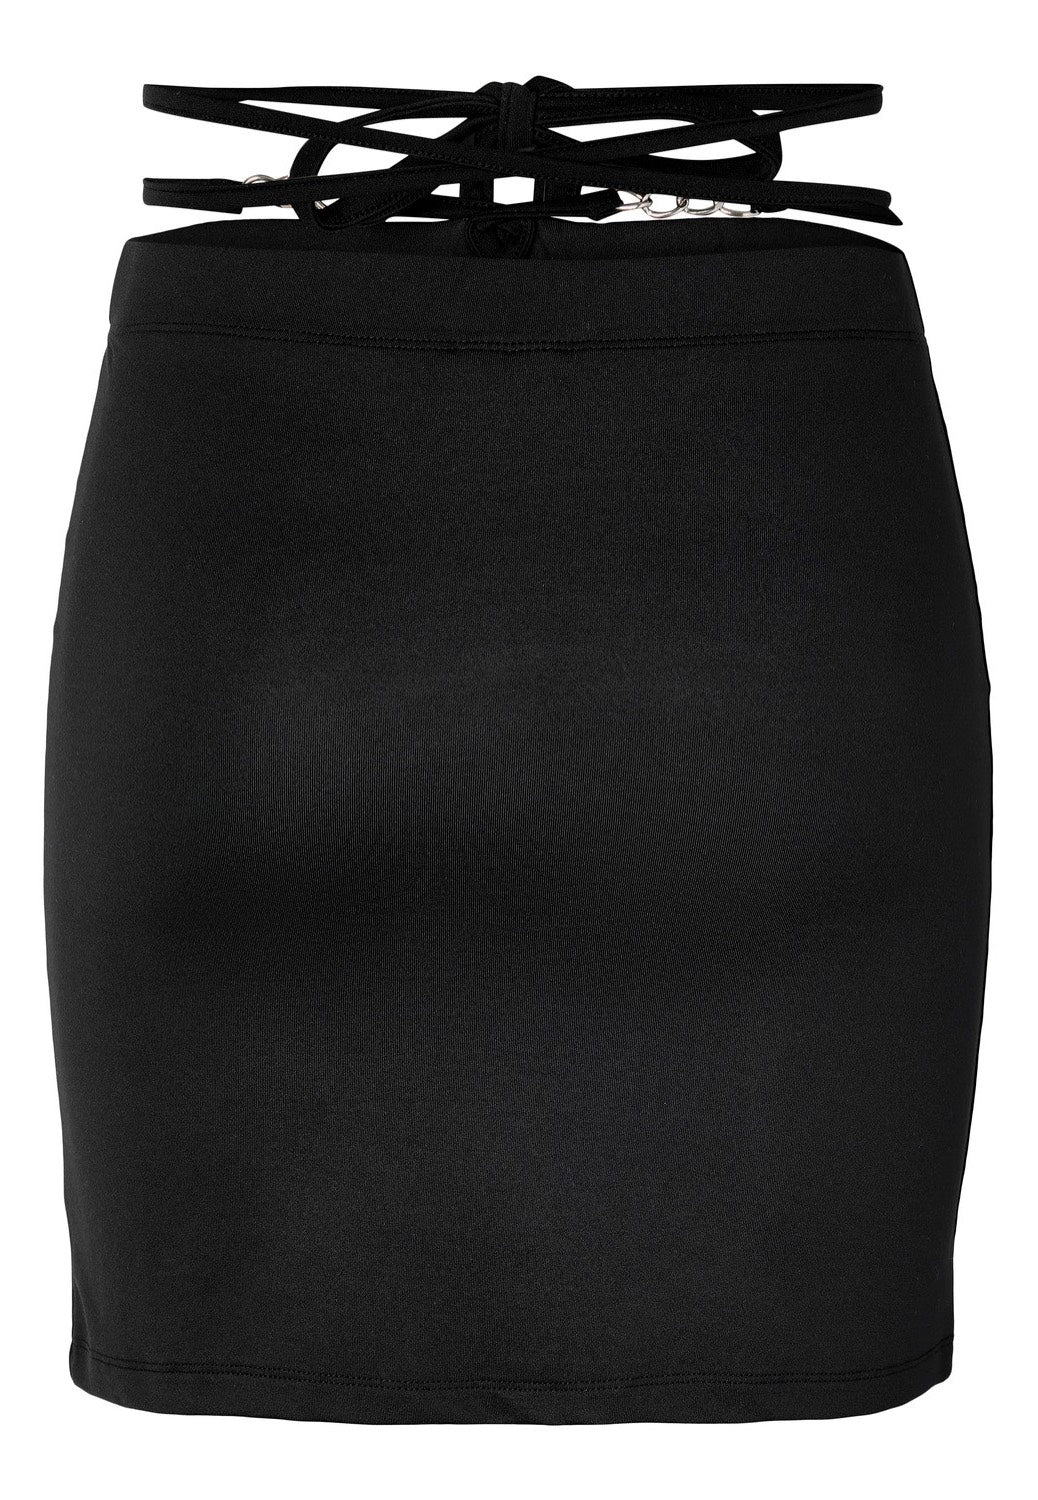 Noisy May - Celeste Chain Details Black - Skirt